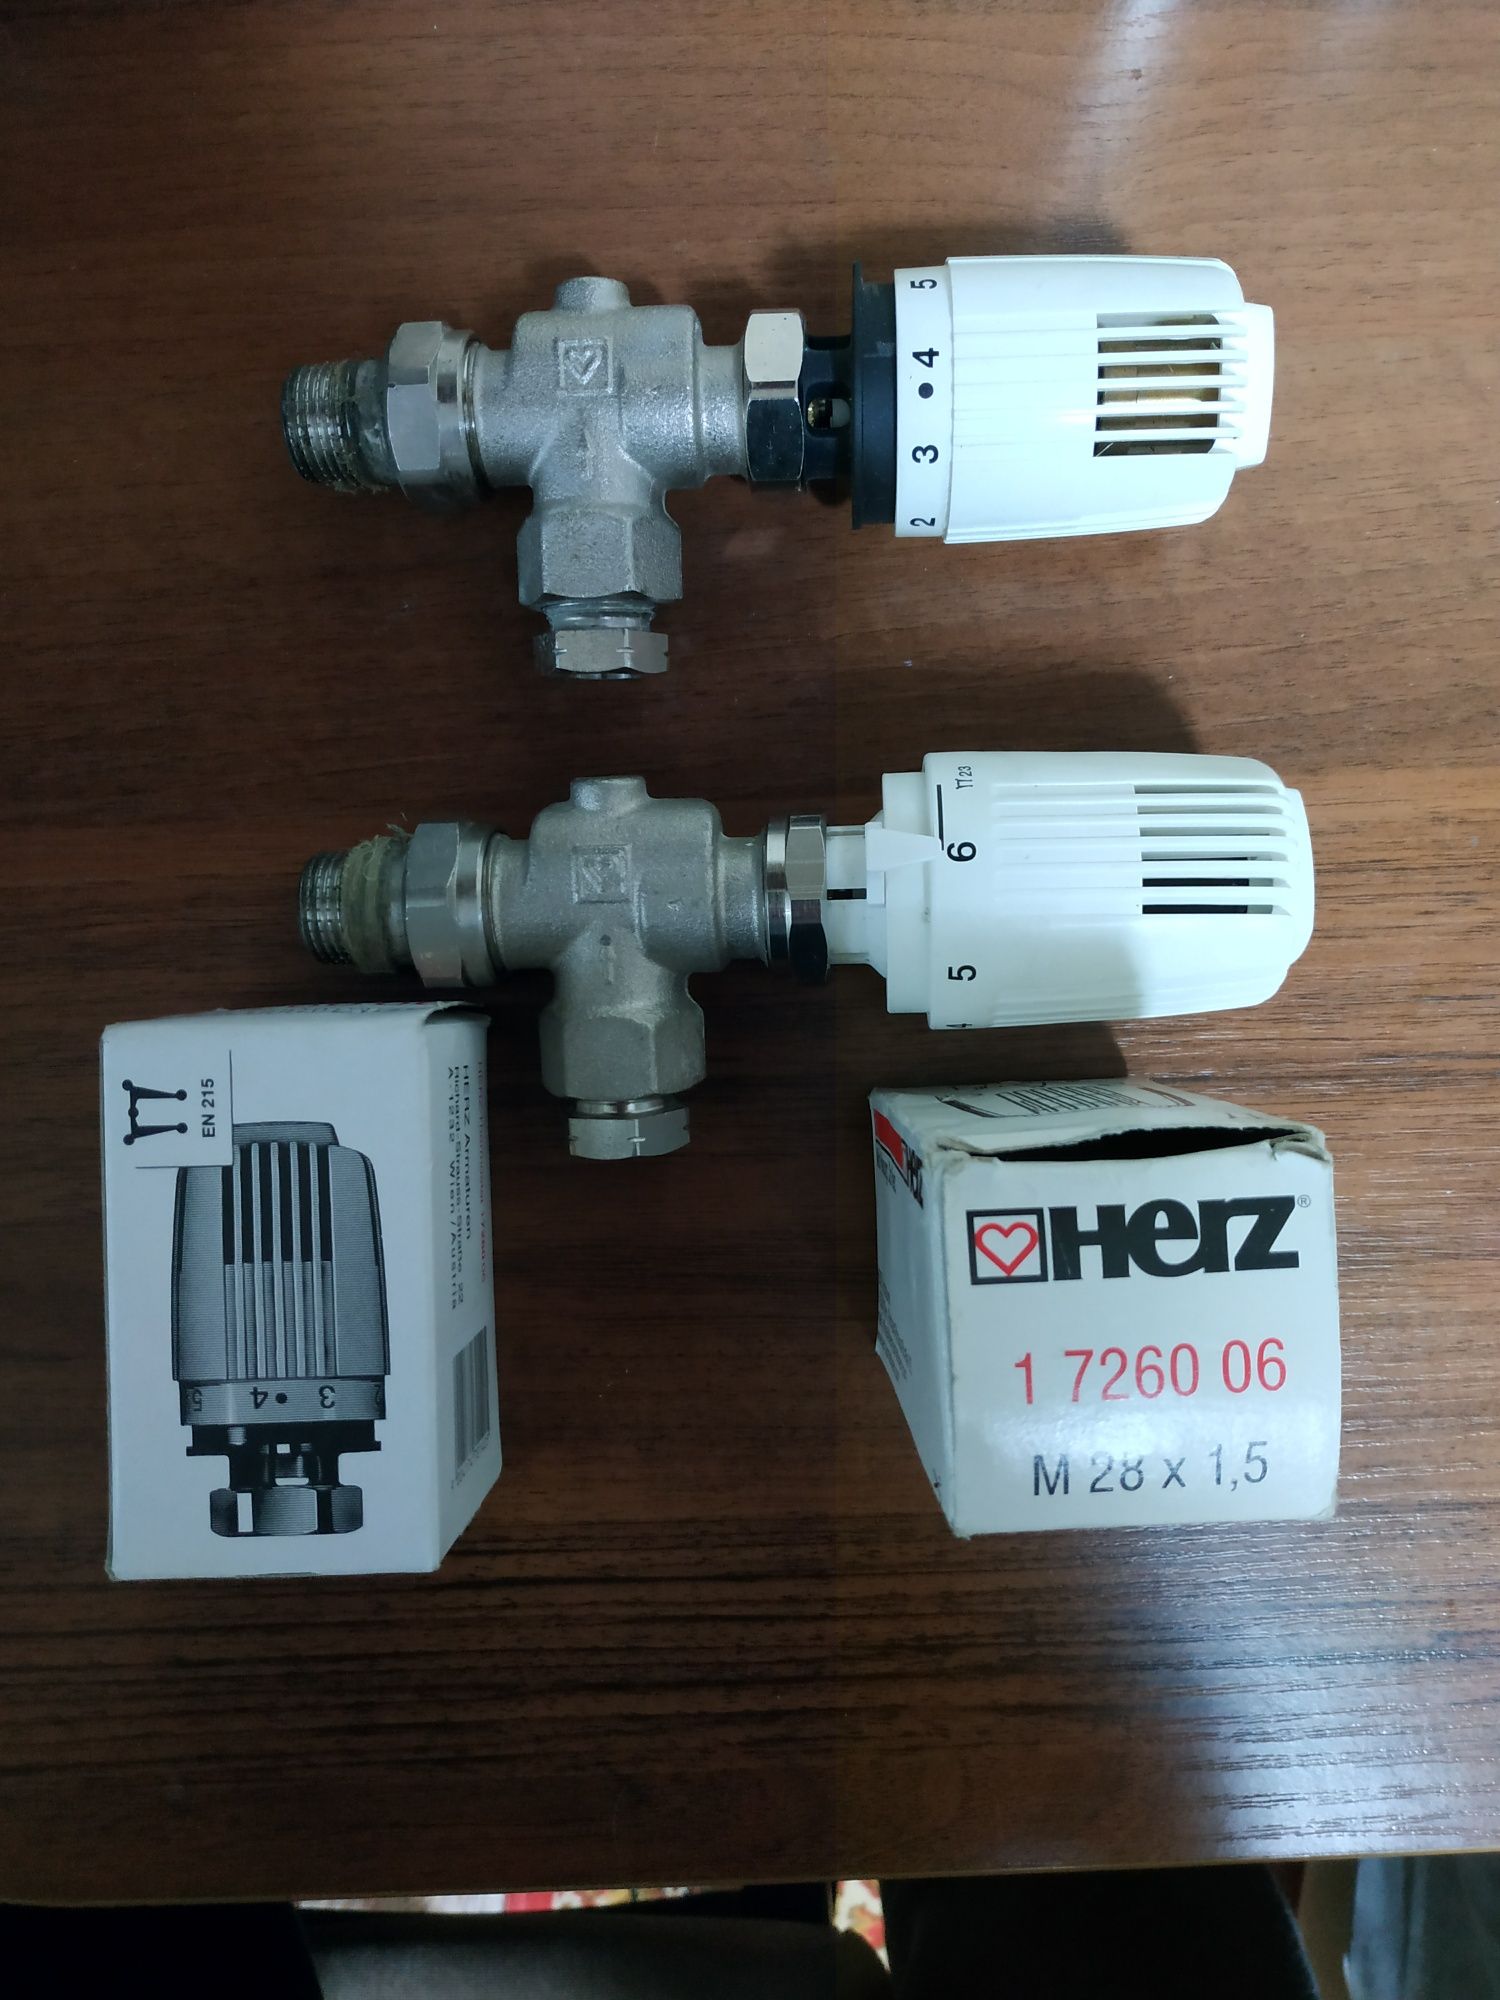 Термоголовка HERZ 1726006(2шт)+ 2 угловых крана HERZ под трубу 15